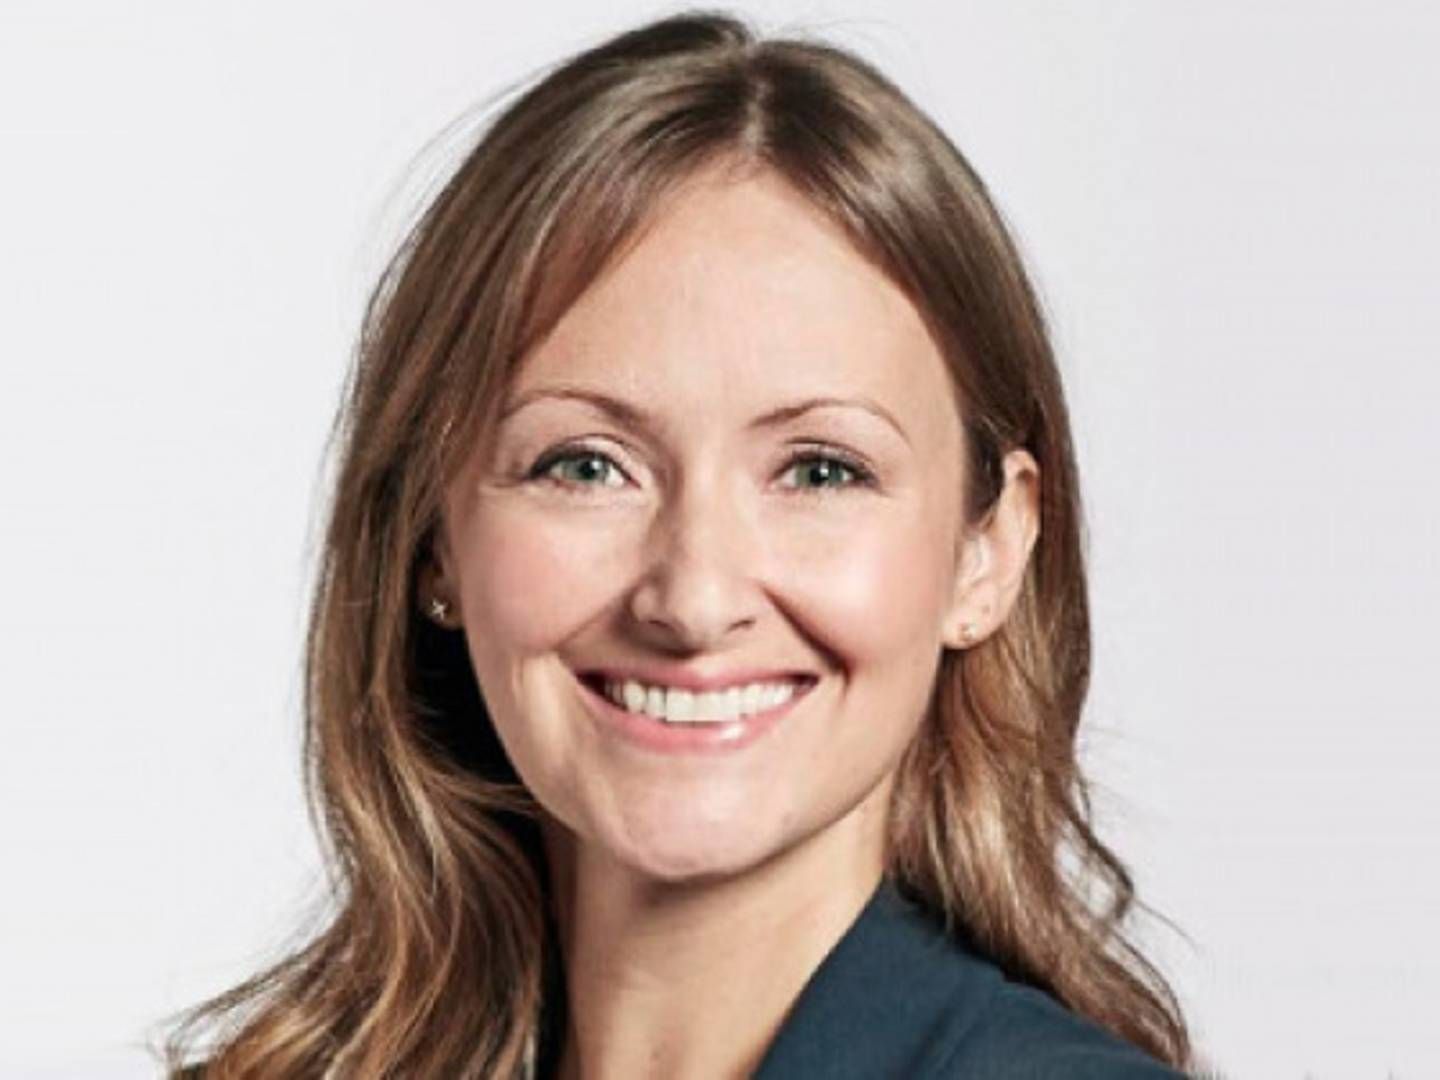 Adm. direktør Camilla Dalum har skudt penge i Roof Management og ejer nu halvdelen af det tidligere Gefion-selskab | Foto: Gefion/PR